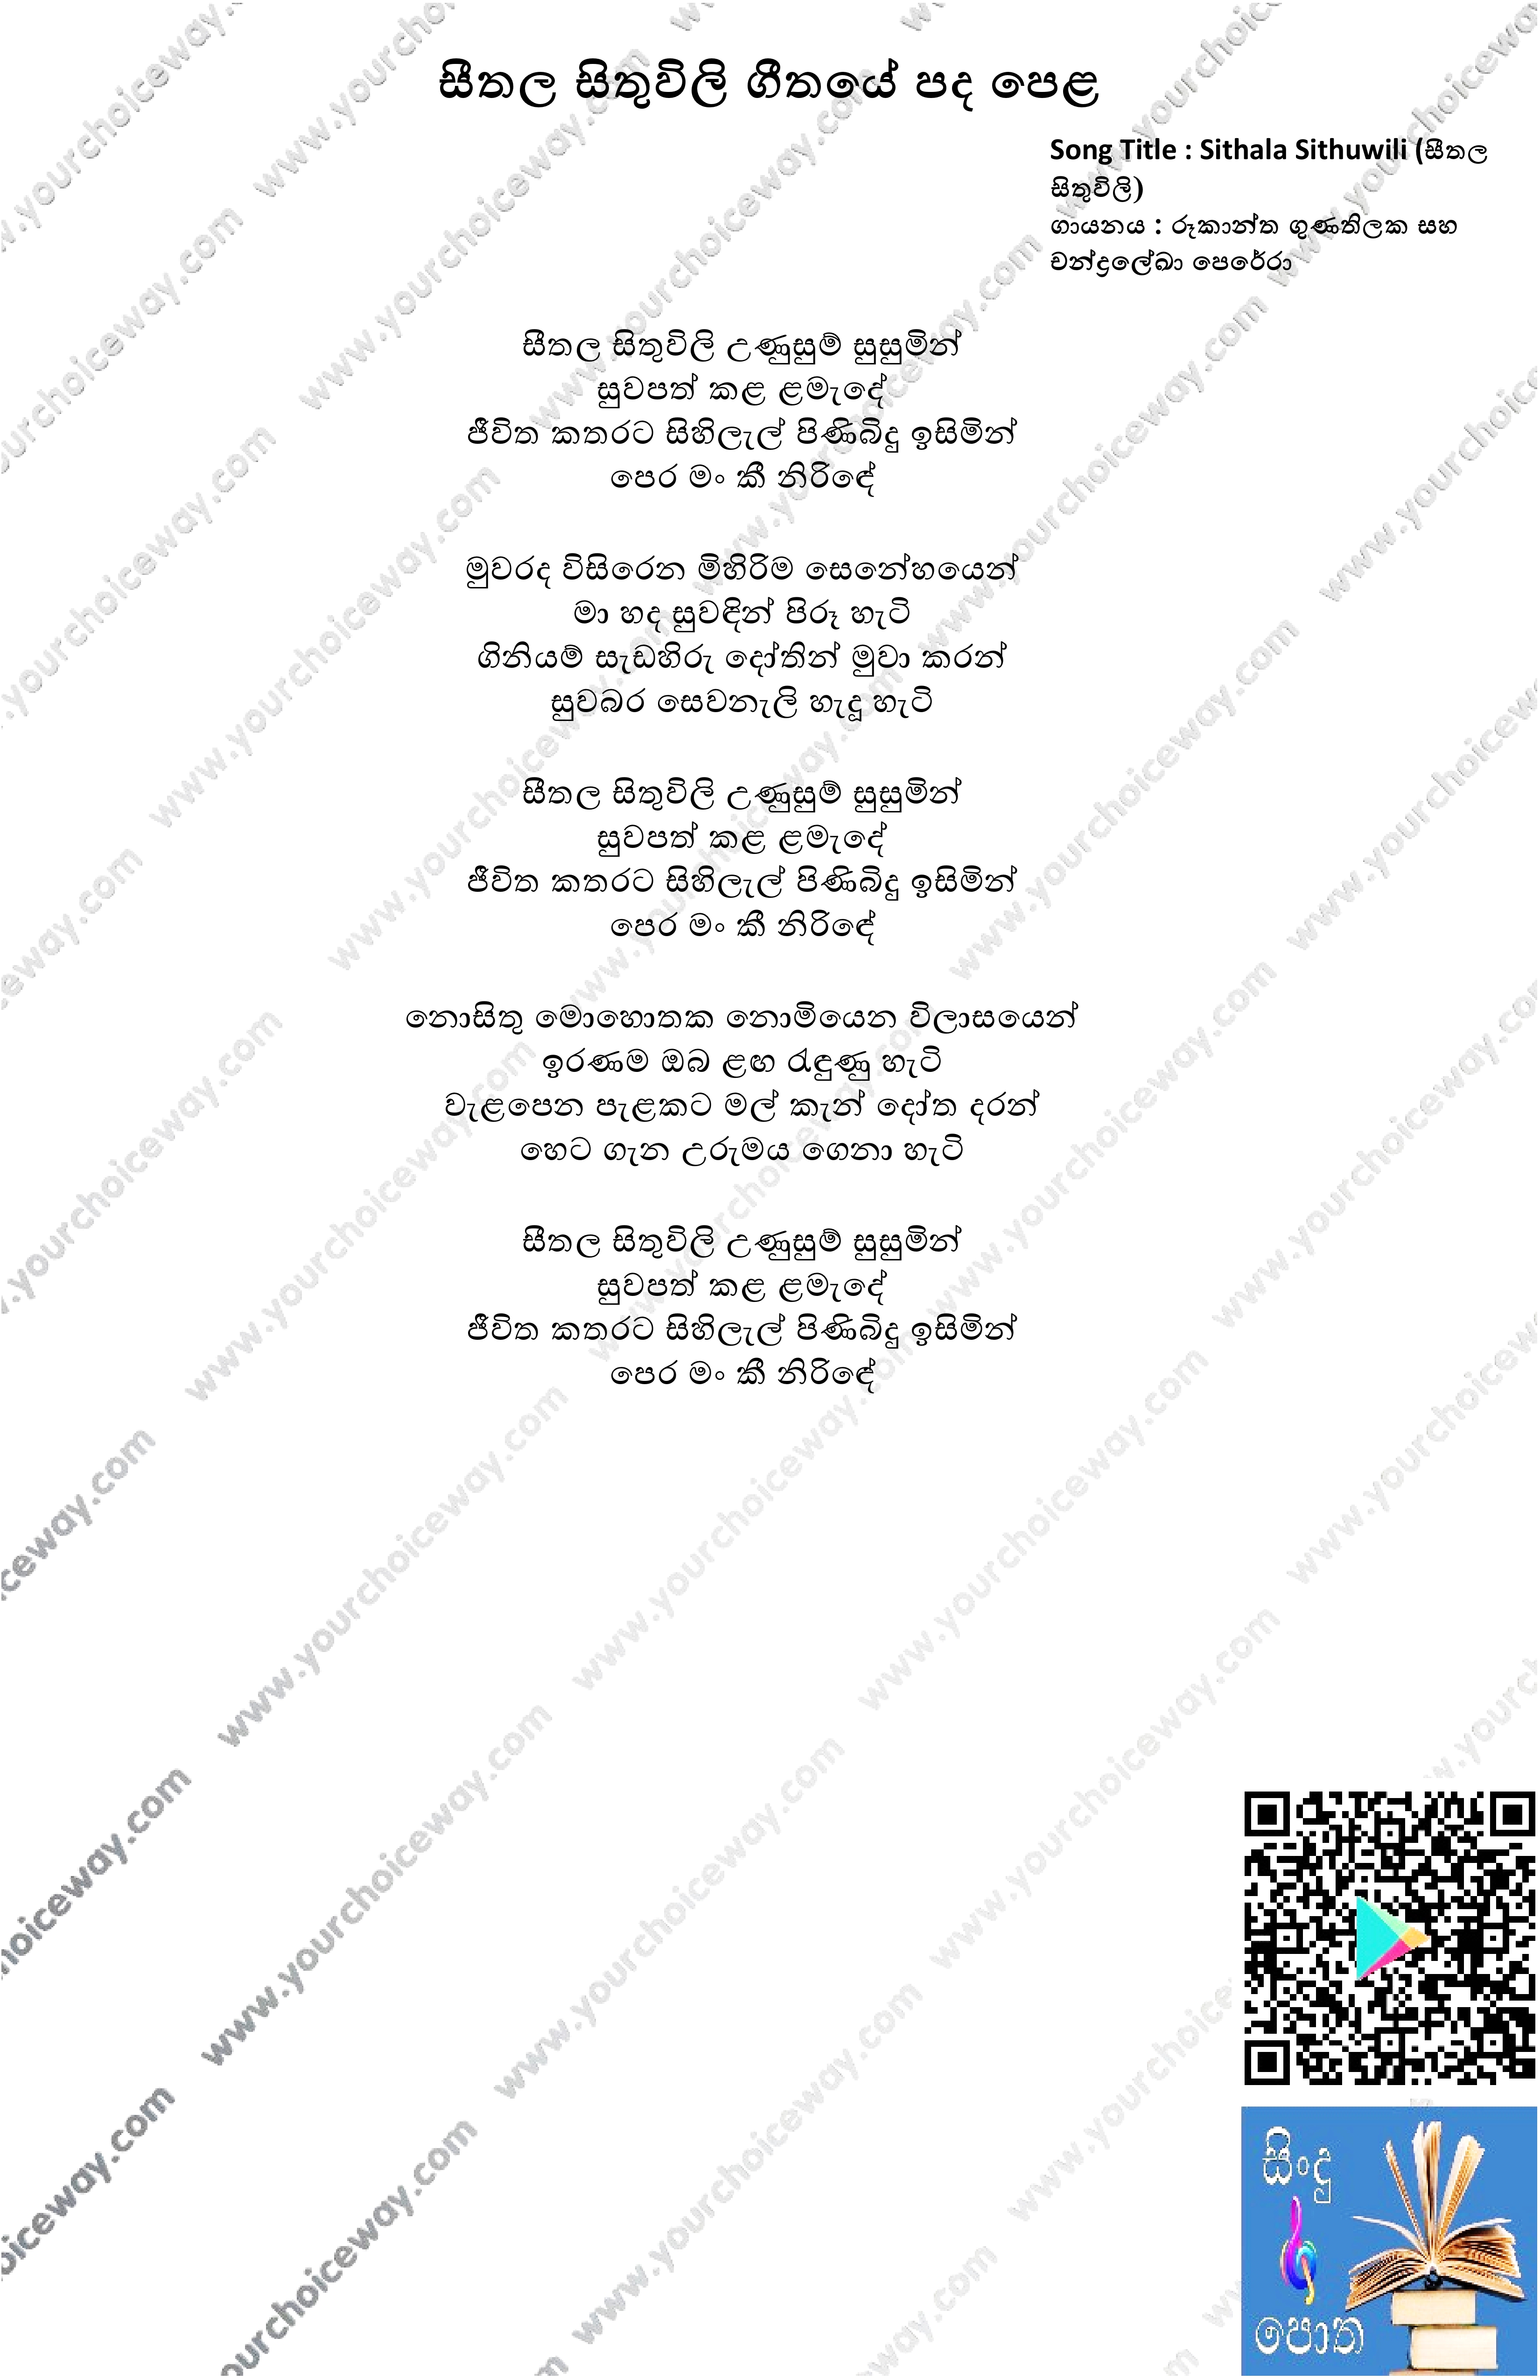 Sithala Sithuwili Song Lyrics - සීතල සිතුවිලි ගීතයේ පද පෙළ